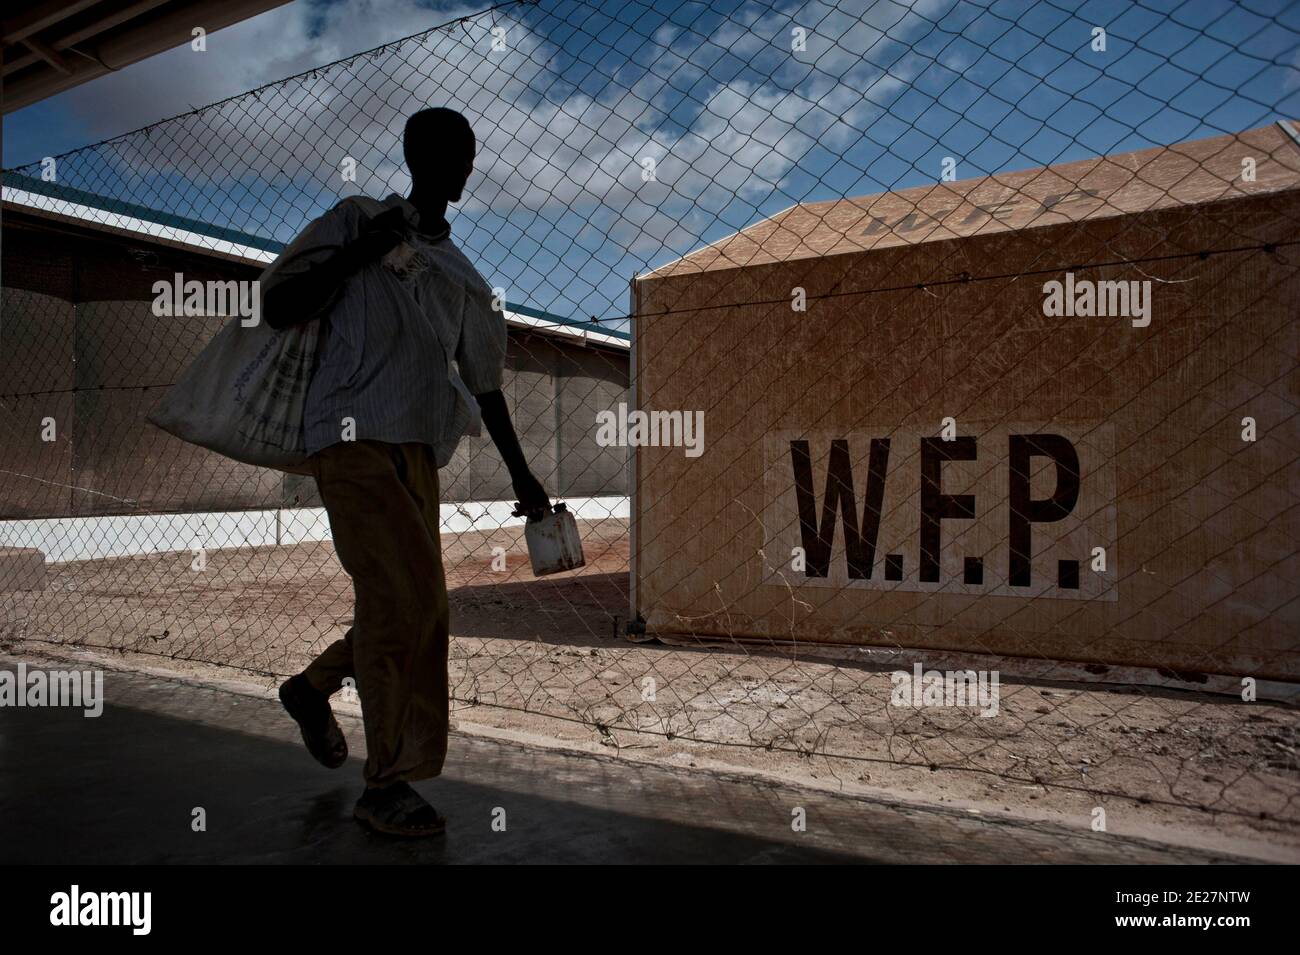 La nourriture est distribuée par le Programme alimentaire mondial au Camp Ifo 3 à Dadaab, au Kenya, le 16 août 2011. Ifo 3 est le plus grand camp de réfugiés au monde et accueille plus de 400,000 000 réfugiés venus pour la plupart de Somalie. Photo d'Arnaud Finistre/ABACAPRESS.COM Banque D'Images